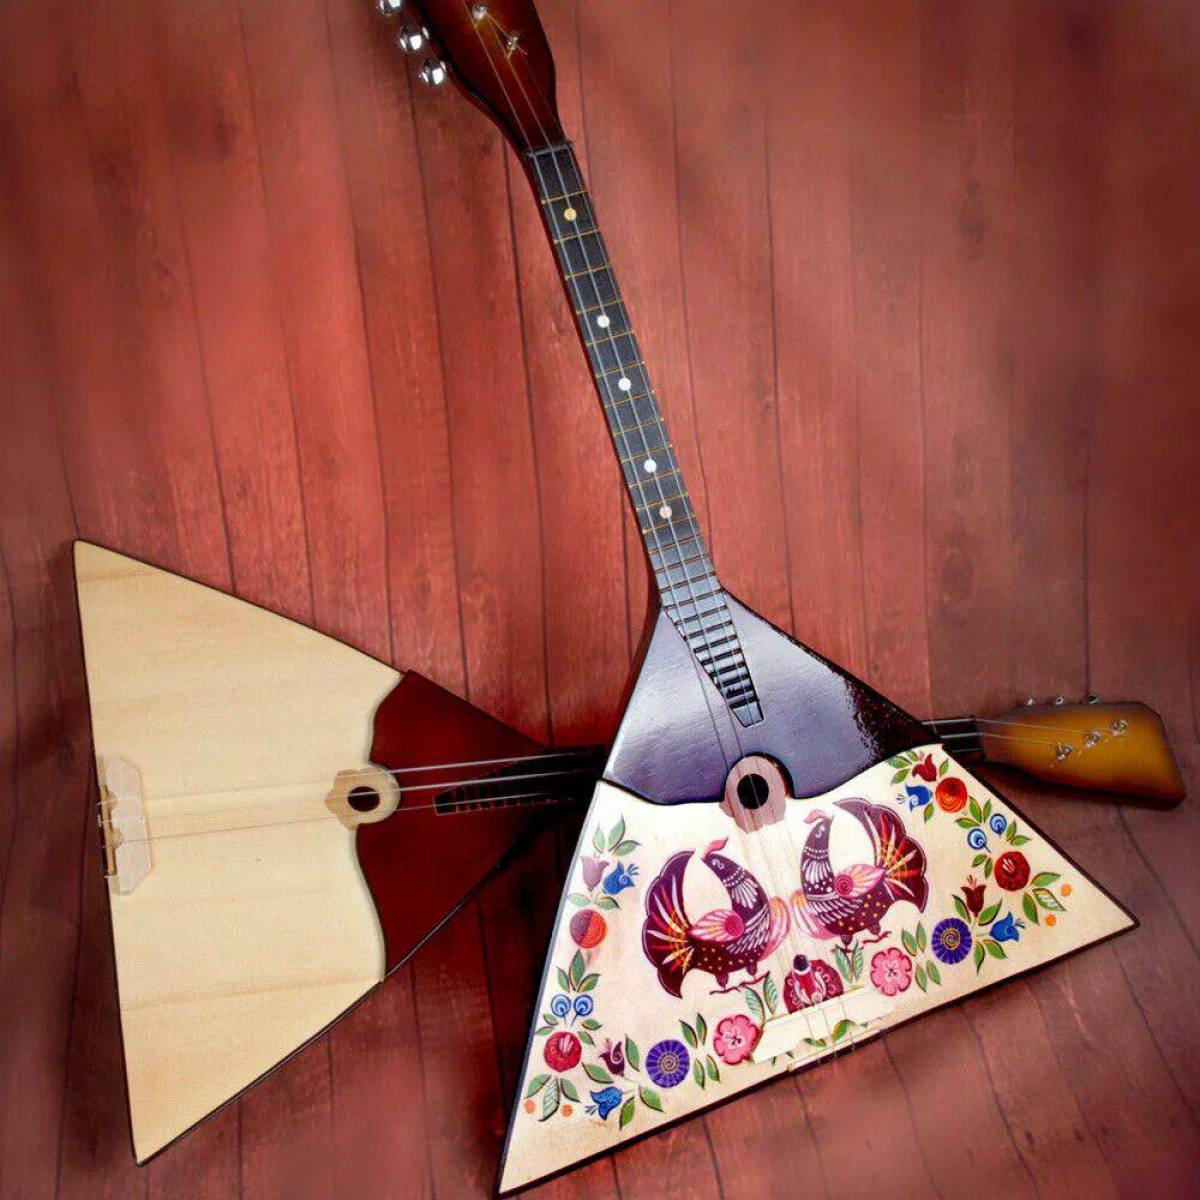 Русские народные инструменты музыкальные #30